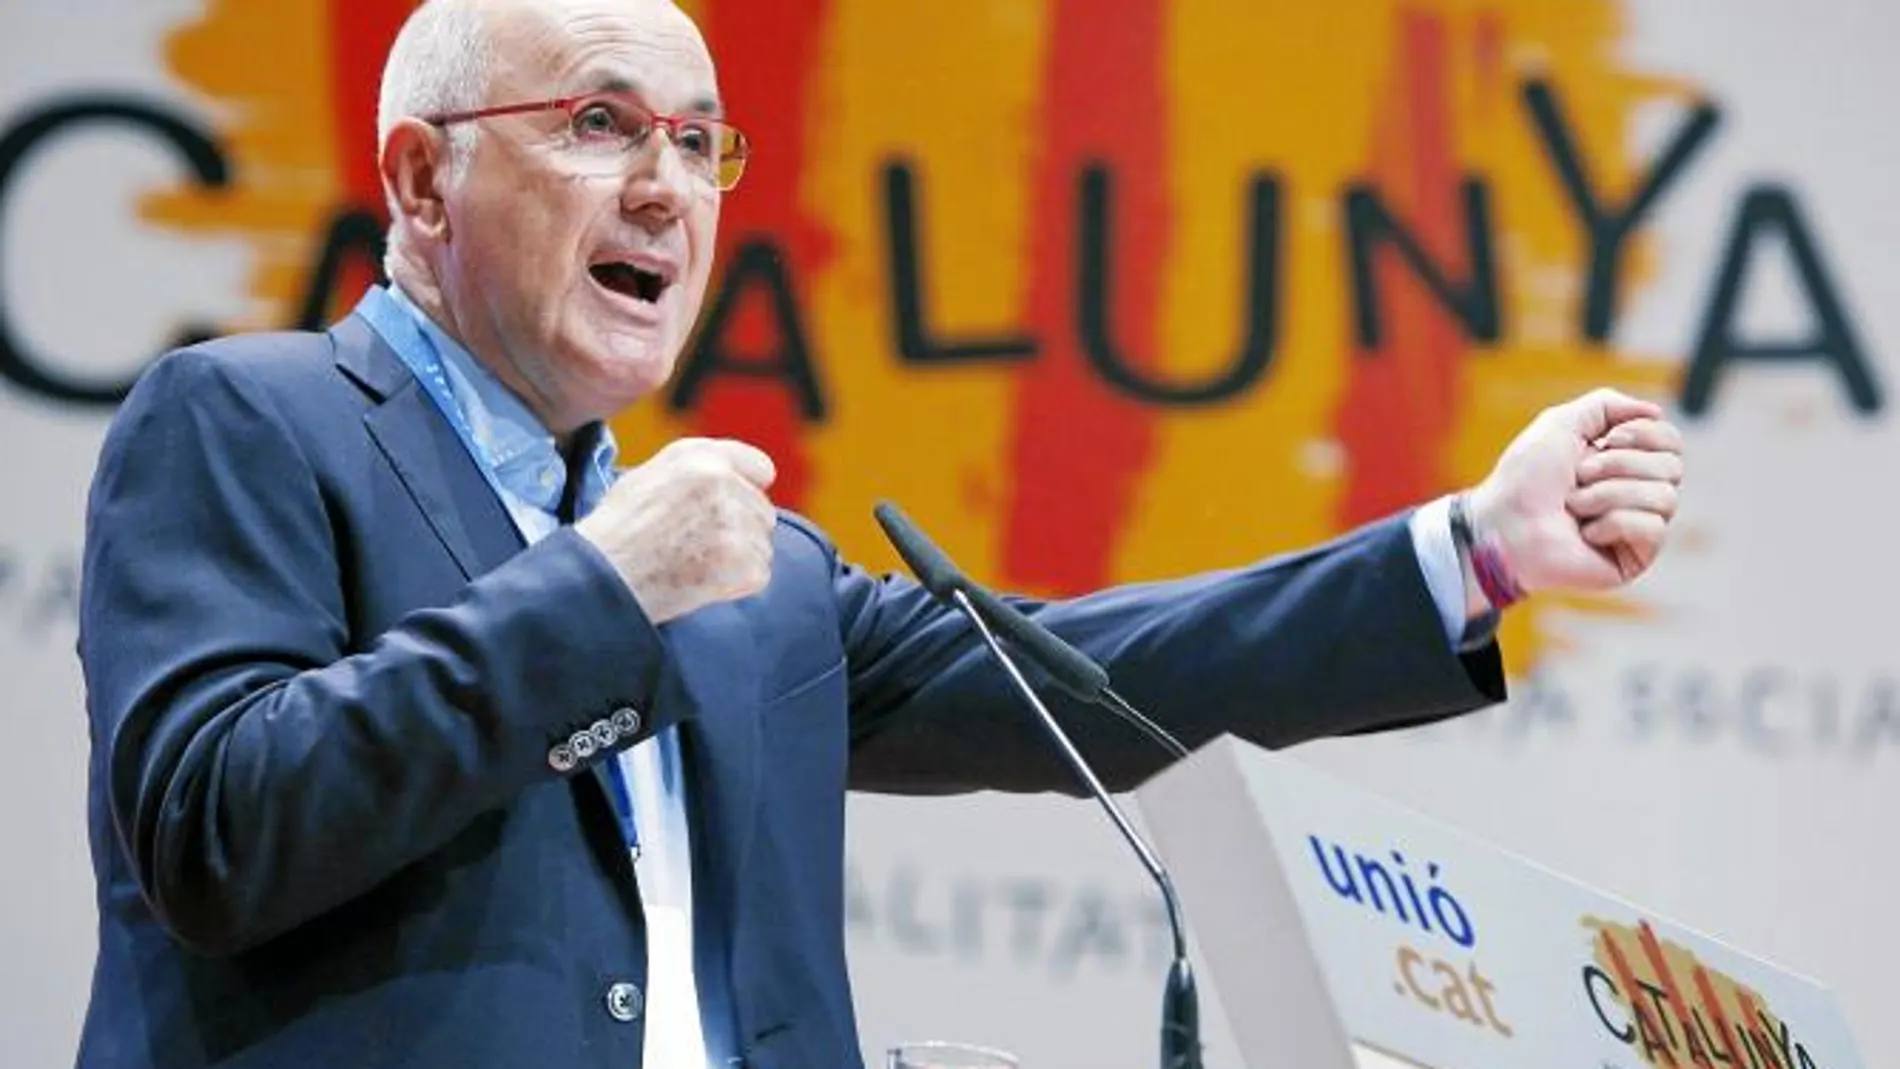 Duran Lleida revalida su liderazgo en Unió por amplia mayoría